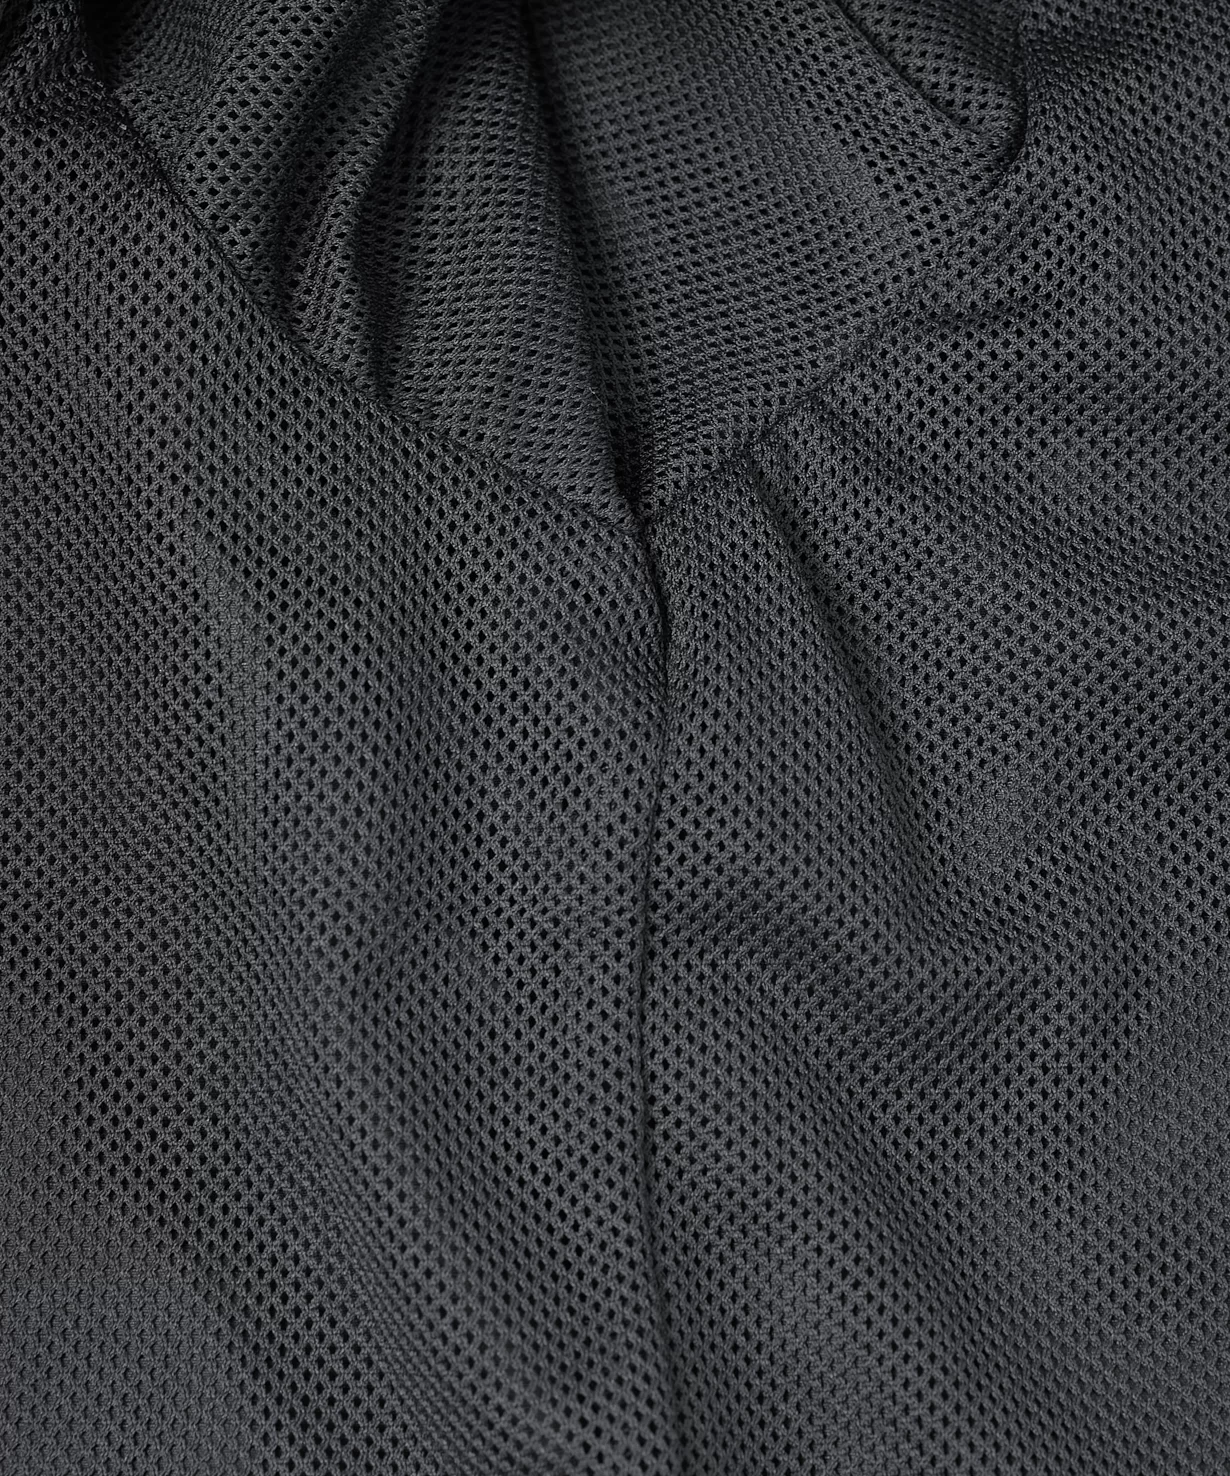 Реальное фото Куртка ветрозащитная DIVISION PerFormPROOF Shower Jacket, черный, детский от магазина СпортСЕ